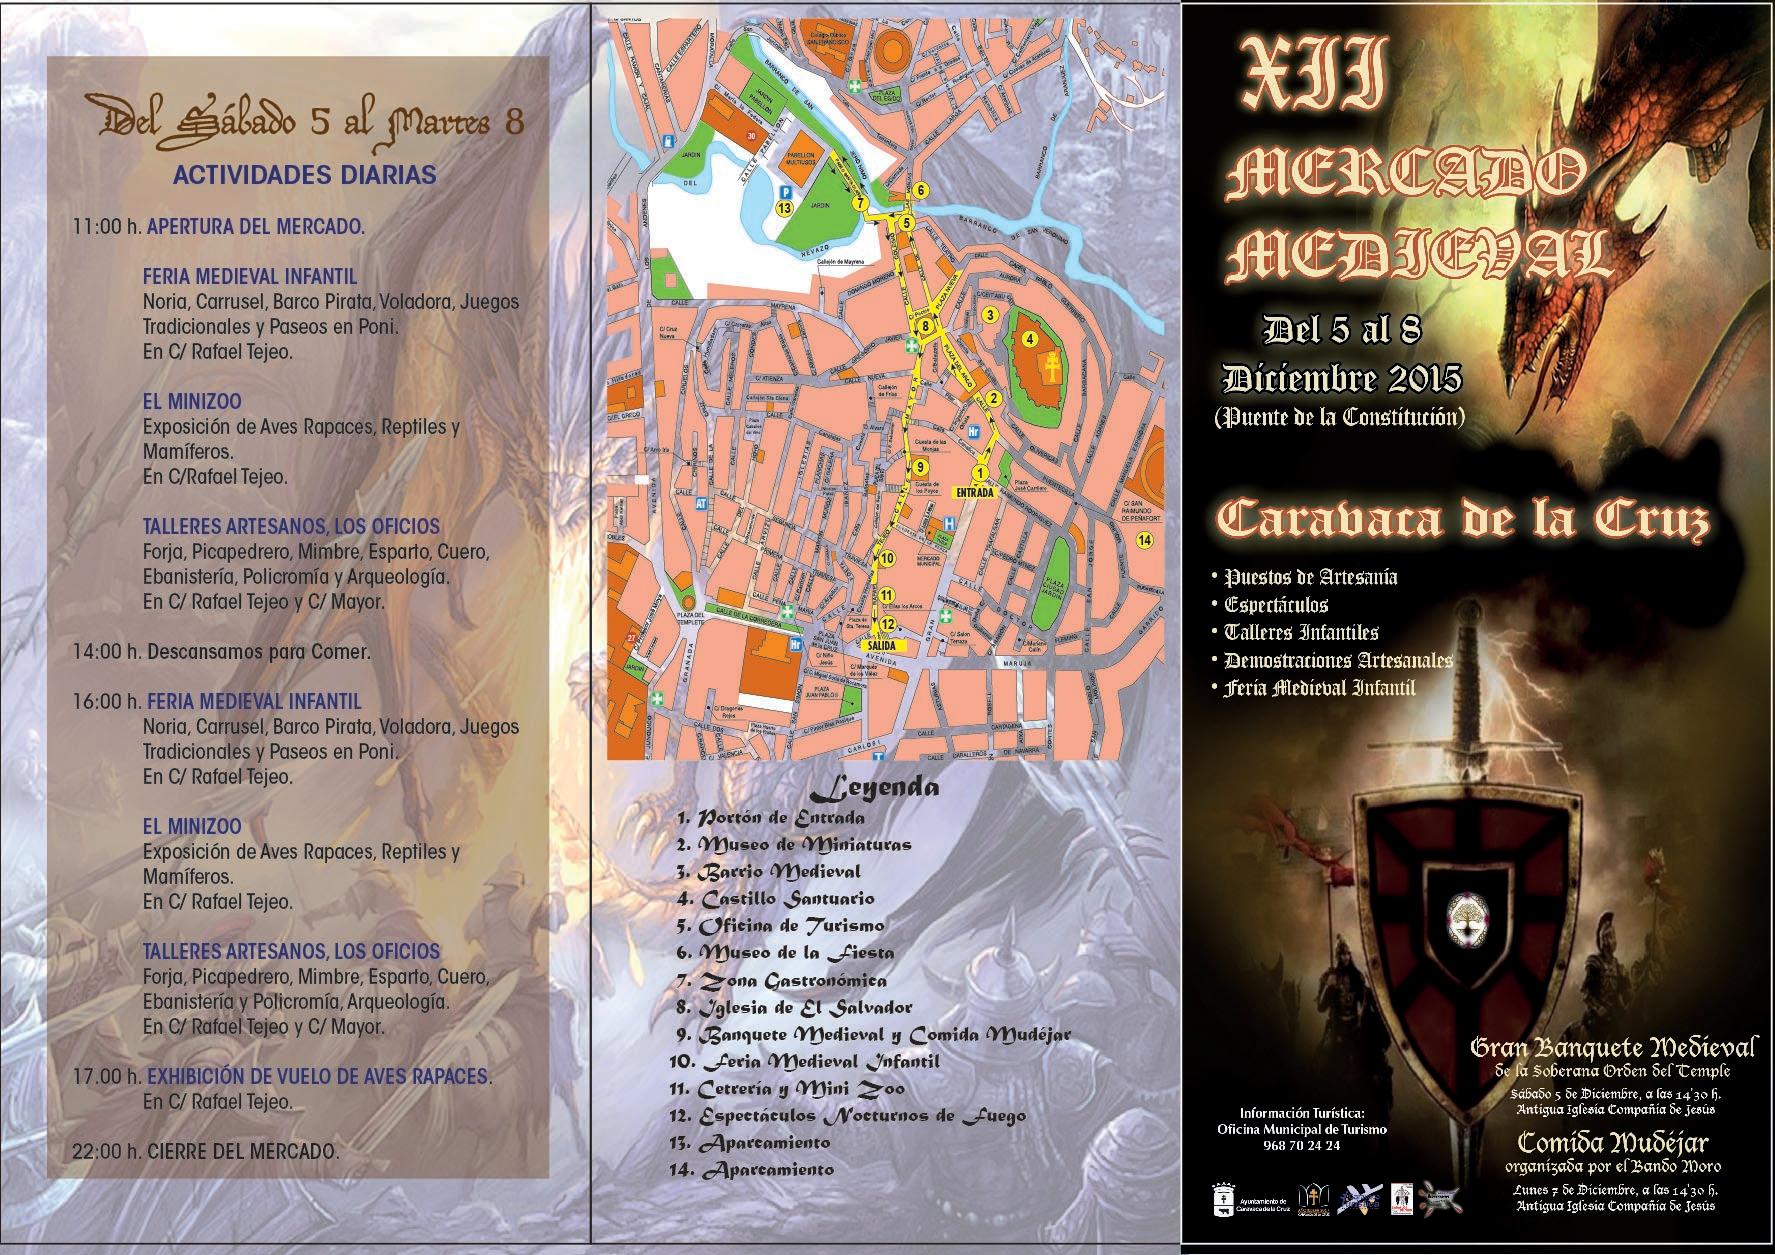 Programacion del XII Mercado medieval del 05 al 08 de Diciembre del 2015 en Caravaca de la Cruz, Murcia